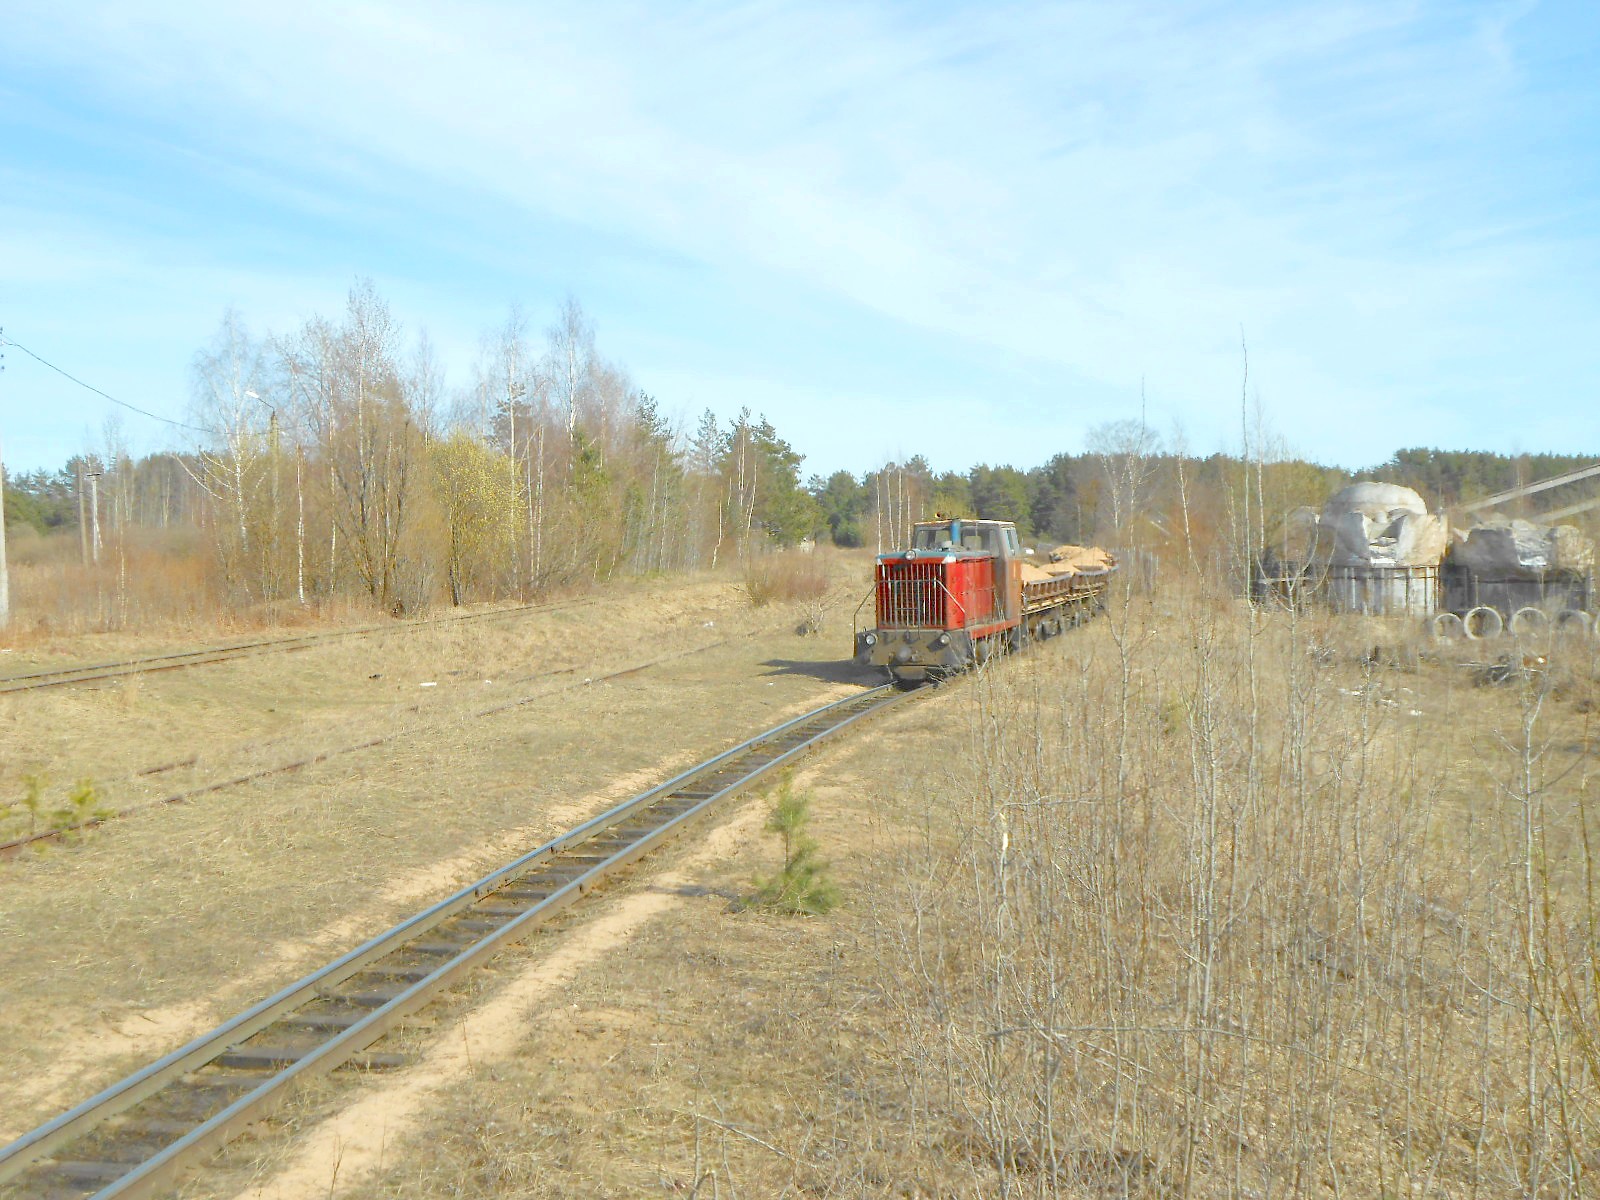 Узкоколейная железная дорога  Тверского комбината строительных материалов №2 — фотографии, сделанные в 2019 году (часть 1)